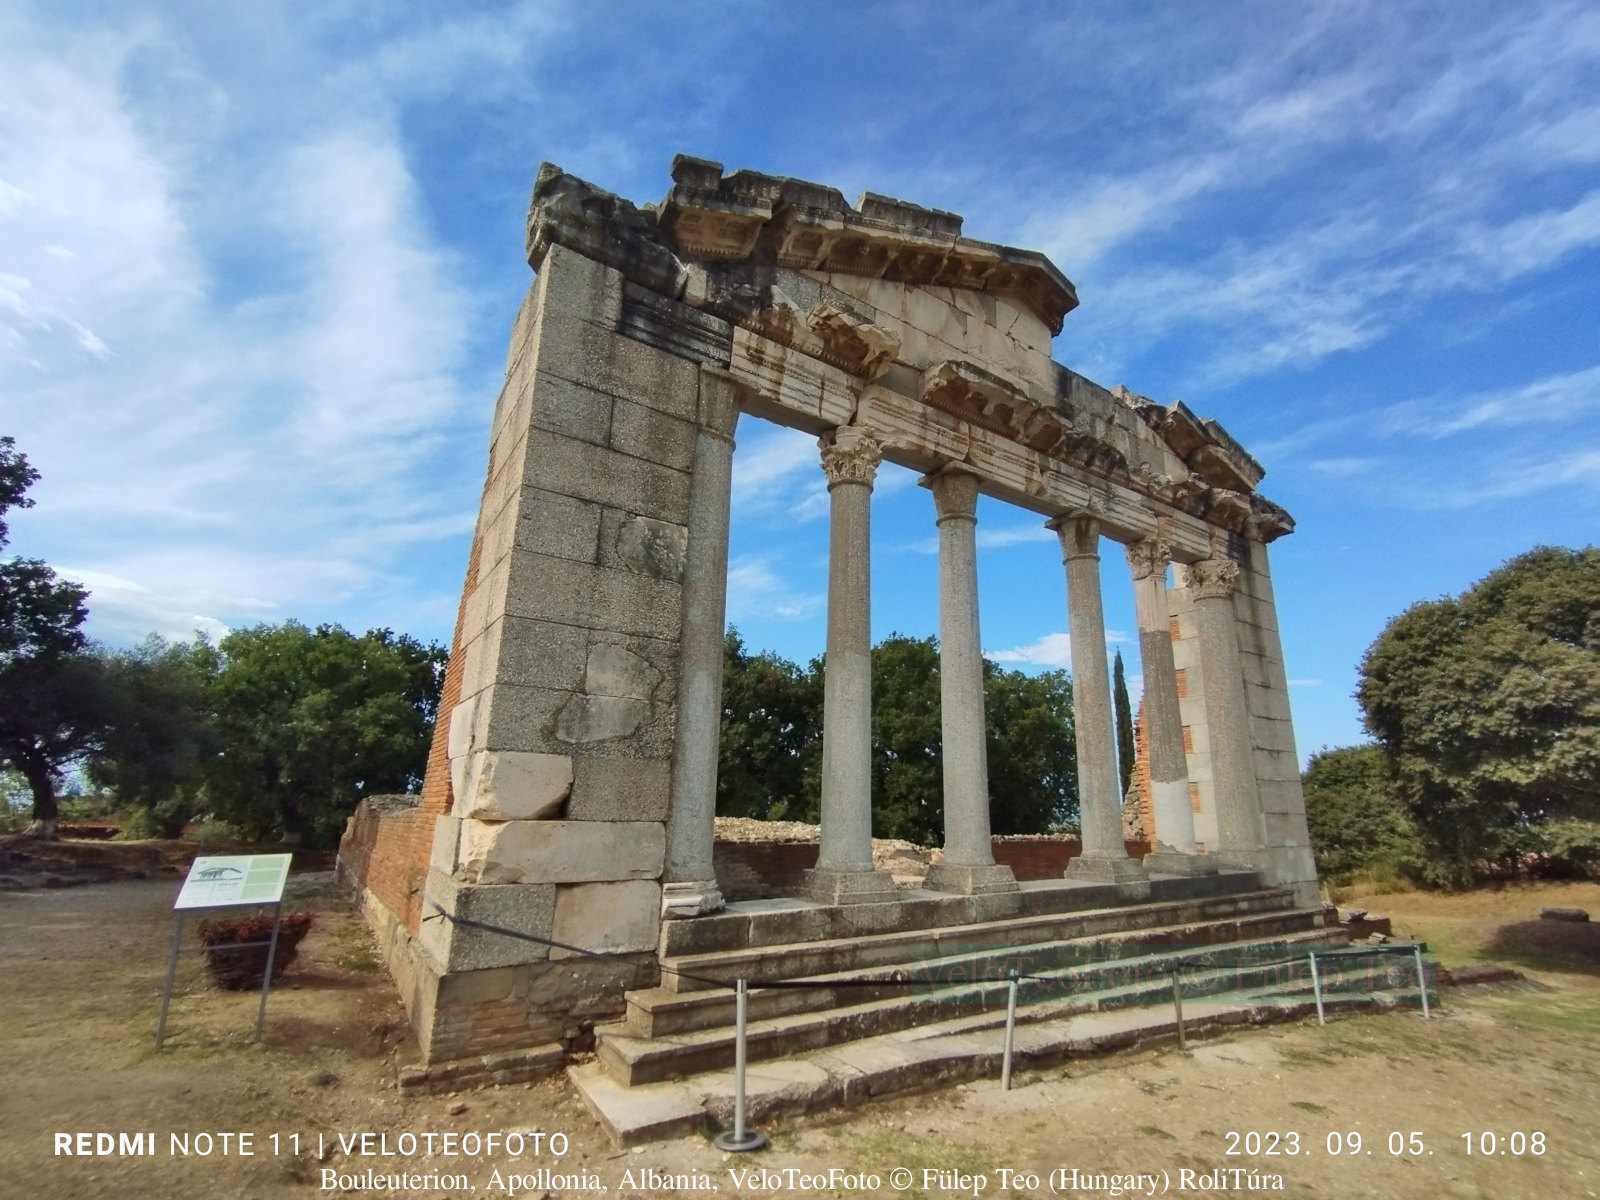 Bouleuterion, Monument of the Agonothets, Apollonia (Illiria), Albania.